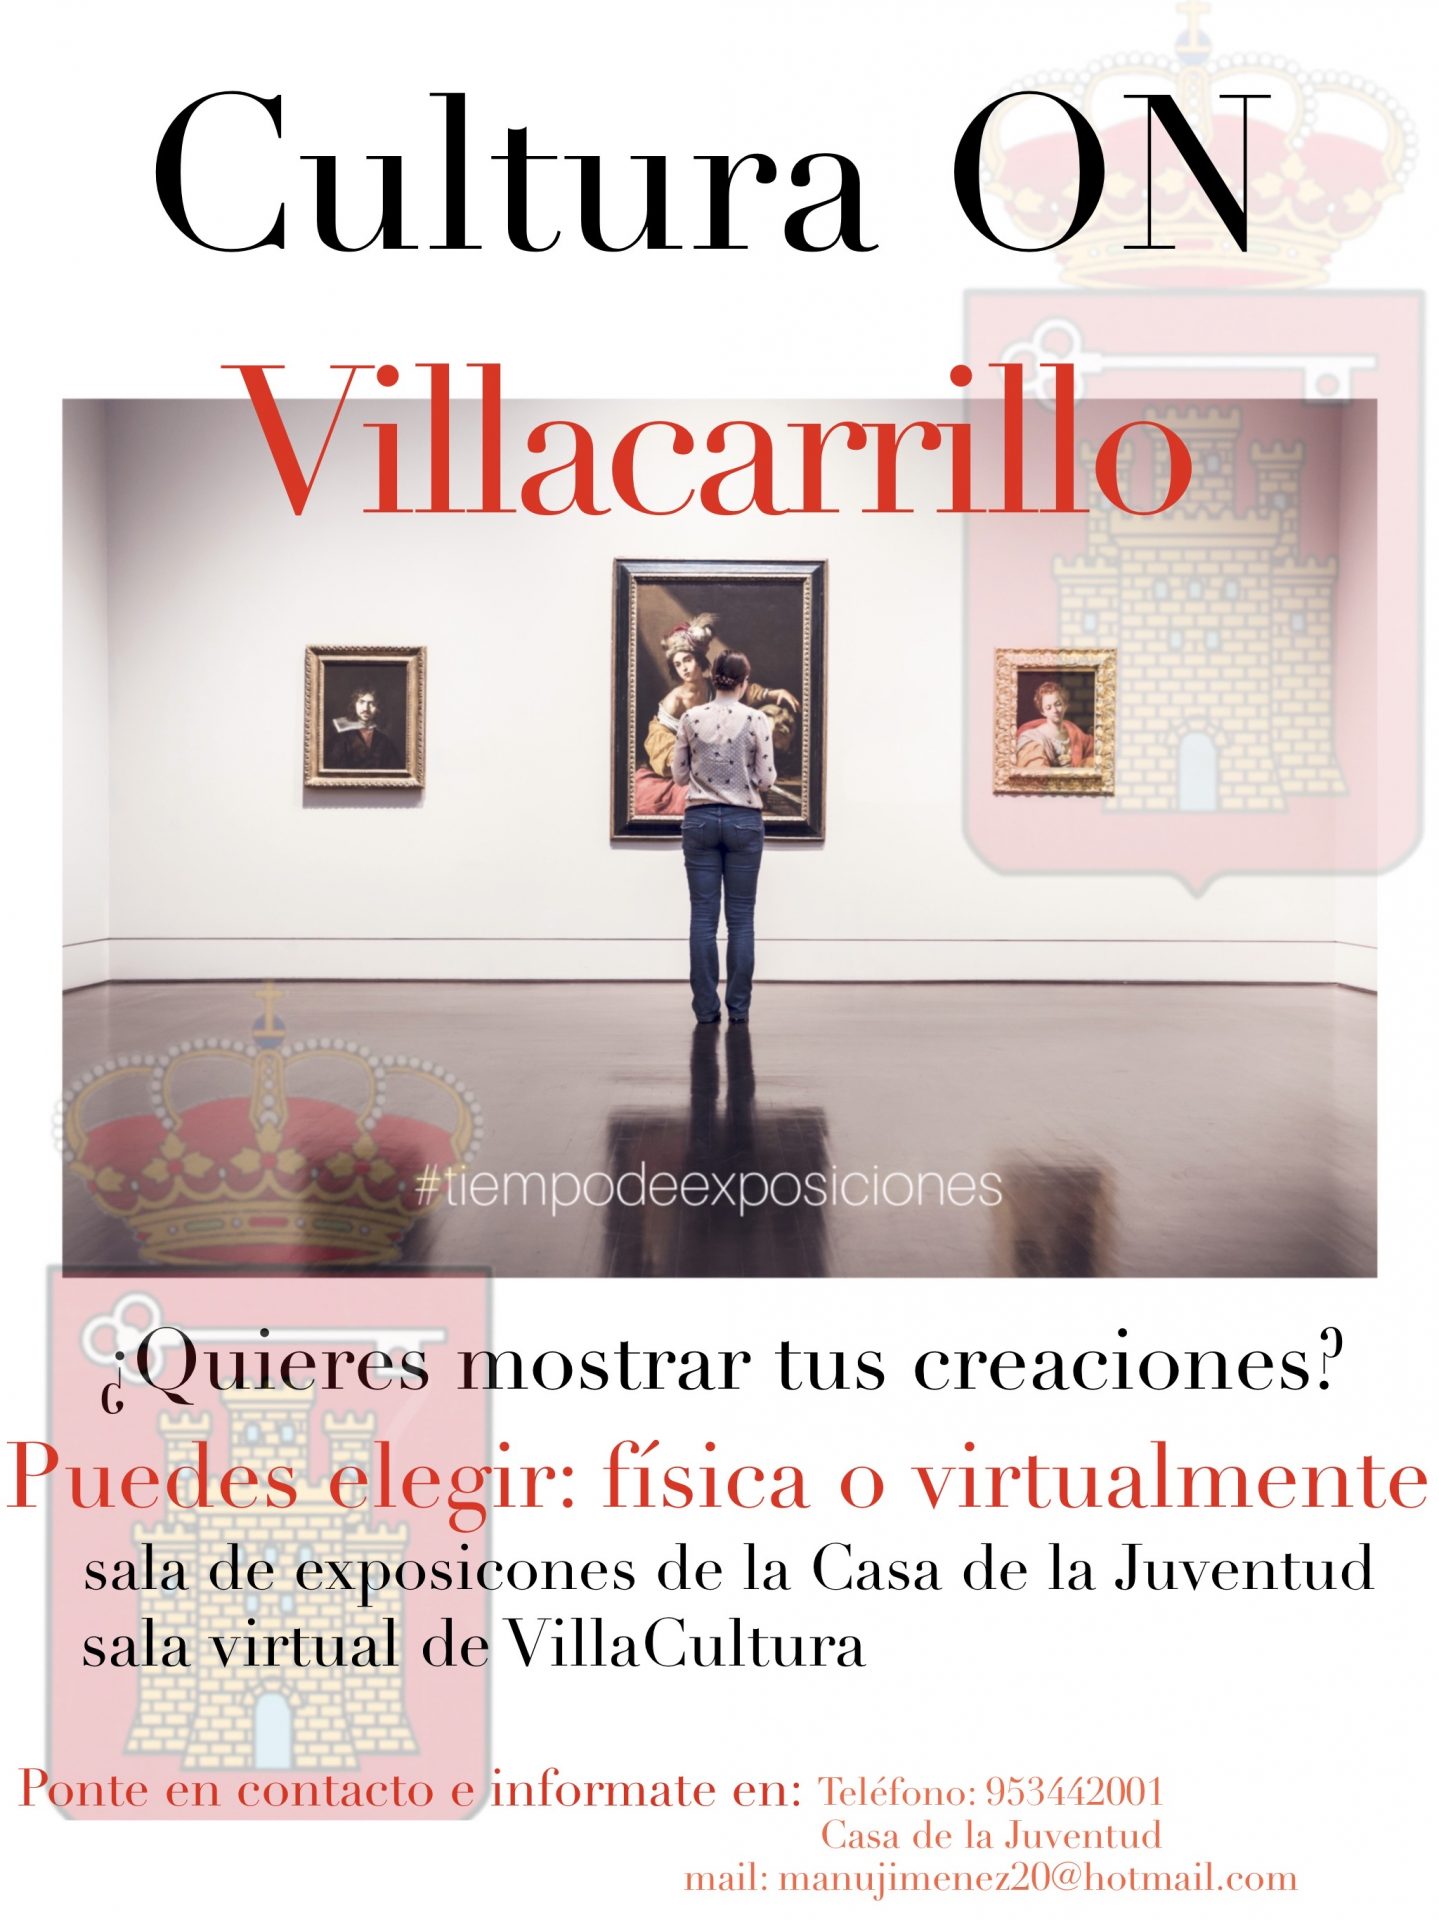 Villacarrillo: Cultura ON, #tiempodeexposiciones